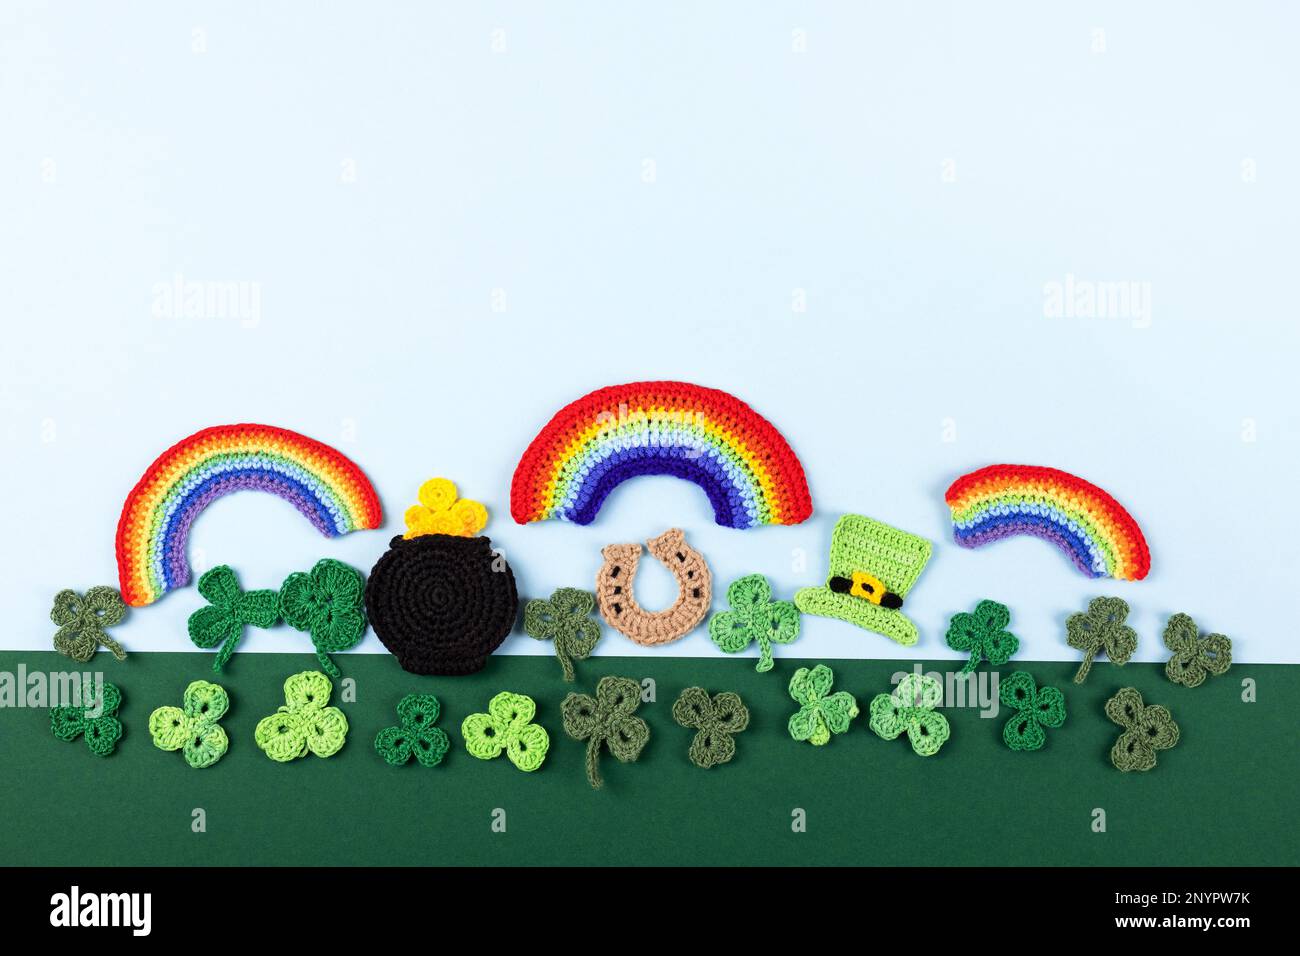 St. Patrick's Day Konzept. Gestrickte Komposition aus grünem Hut, goldenem Topf, Hufeisen, Regenbogen und grünen Shamrocks auf grün-blauem Hintergrund Stockfoto